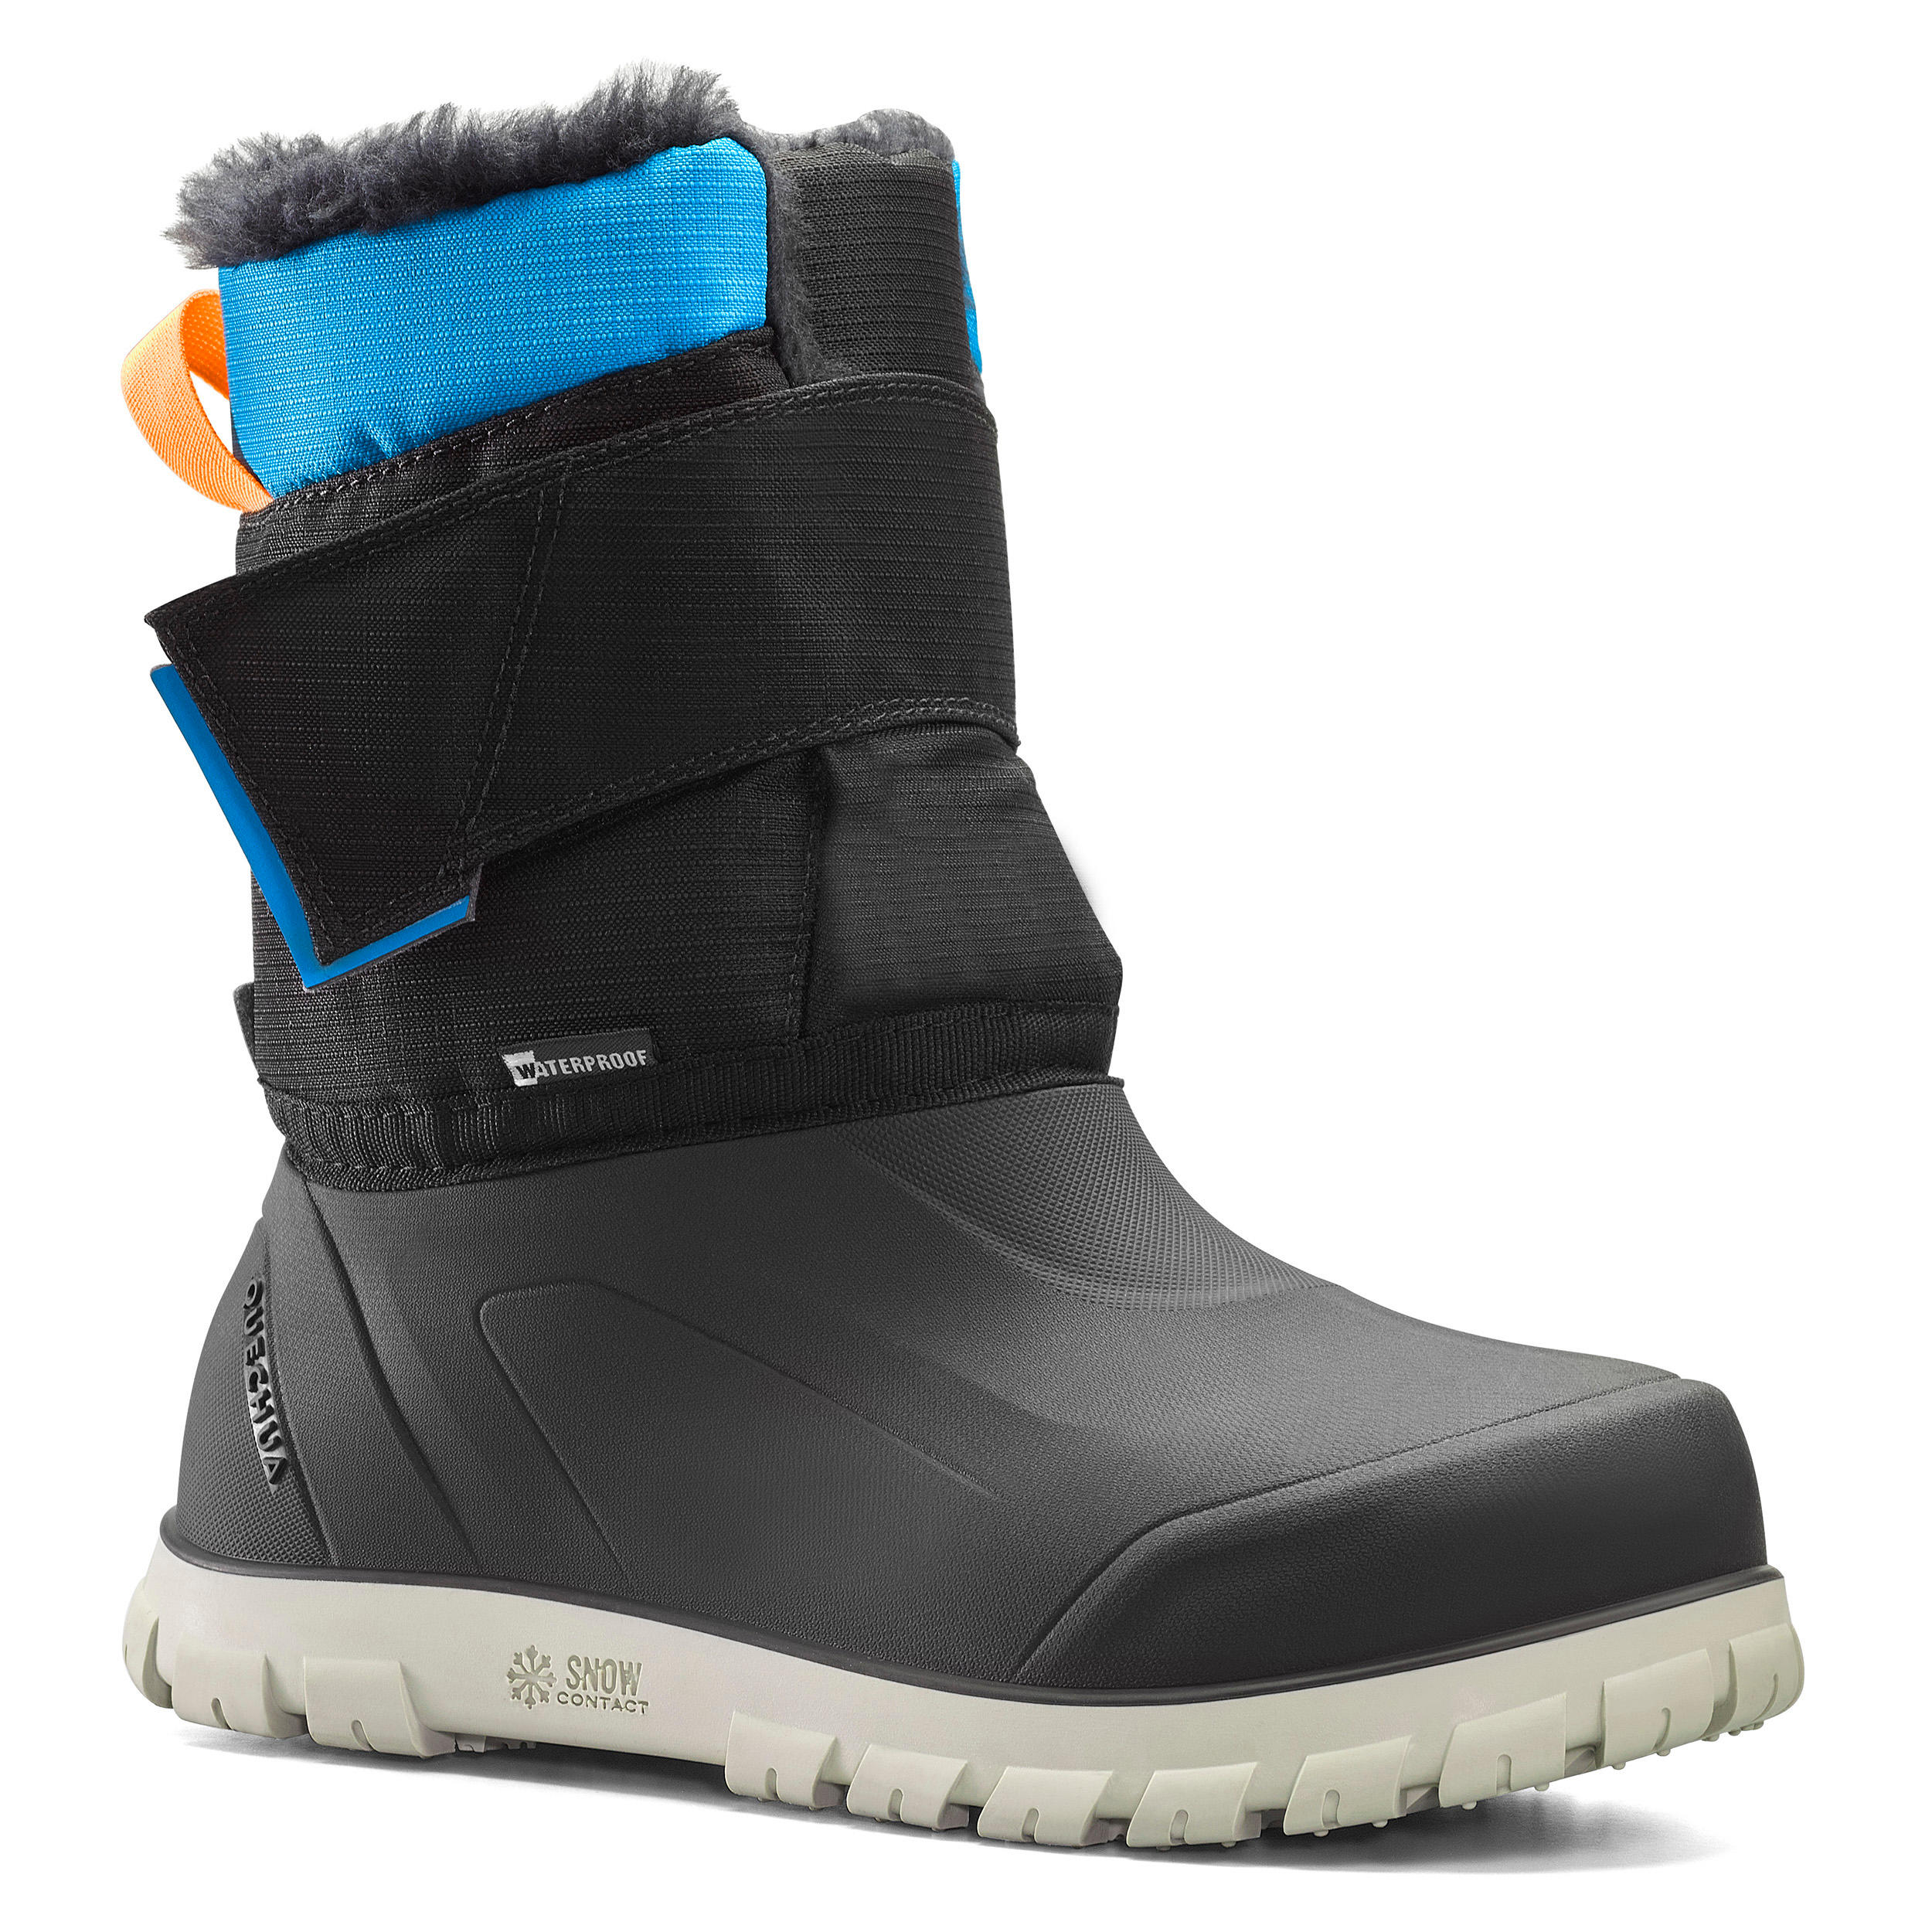 Shoes Garçon Chaussures Bottes Bottes de neige Bottes neige enfant 8392511 